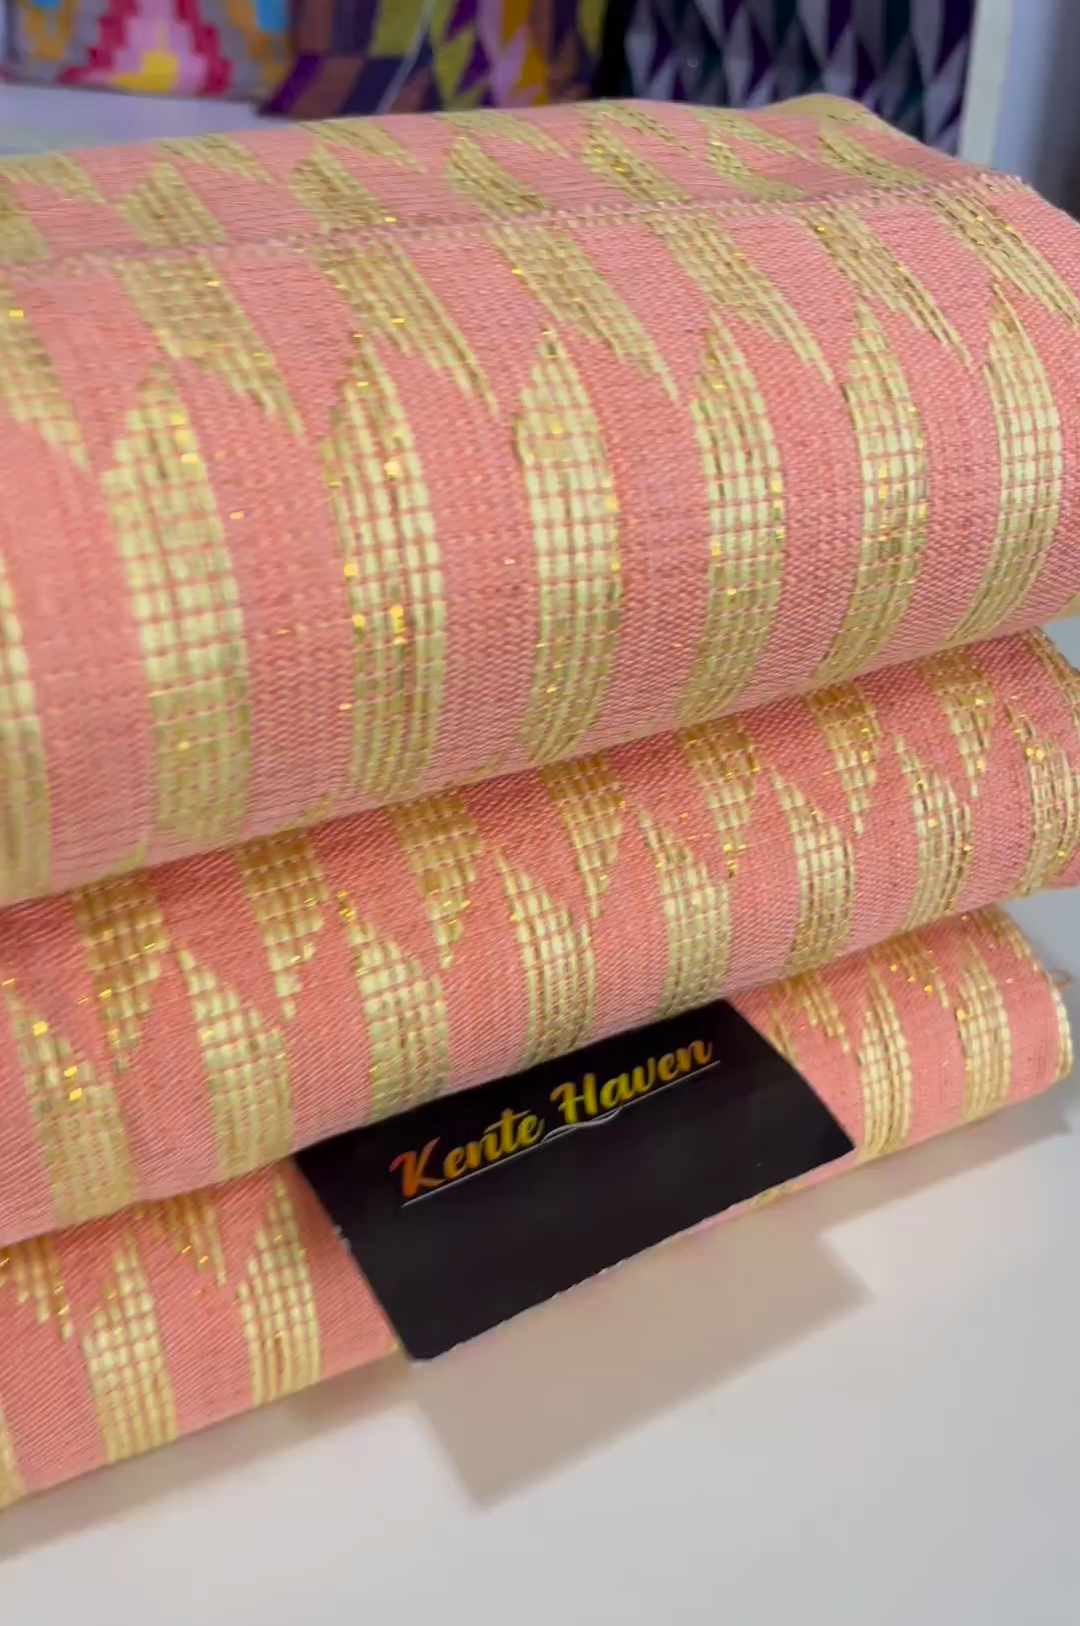 Kente Heaven Hand Weaved Kente Cloth KH209